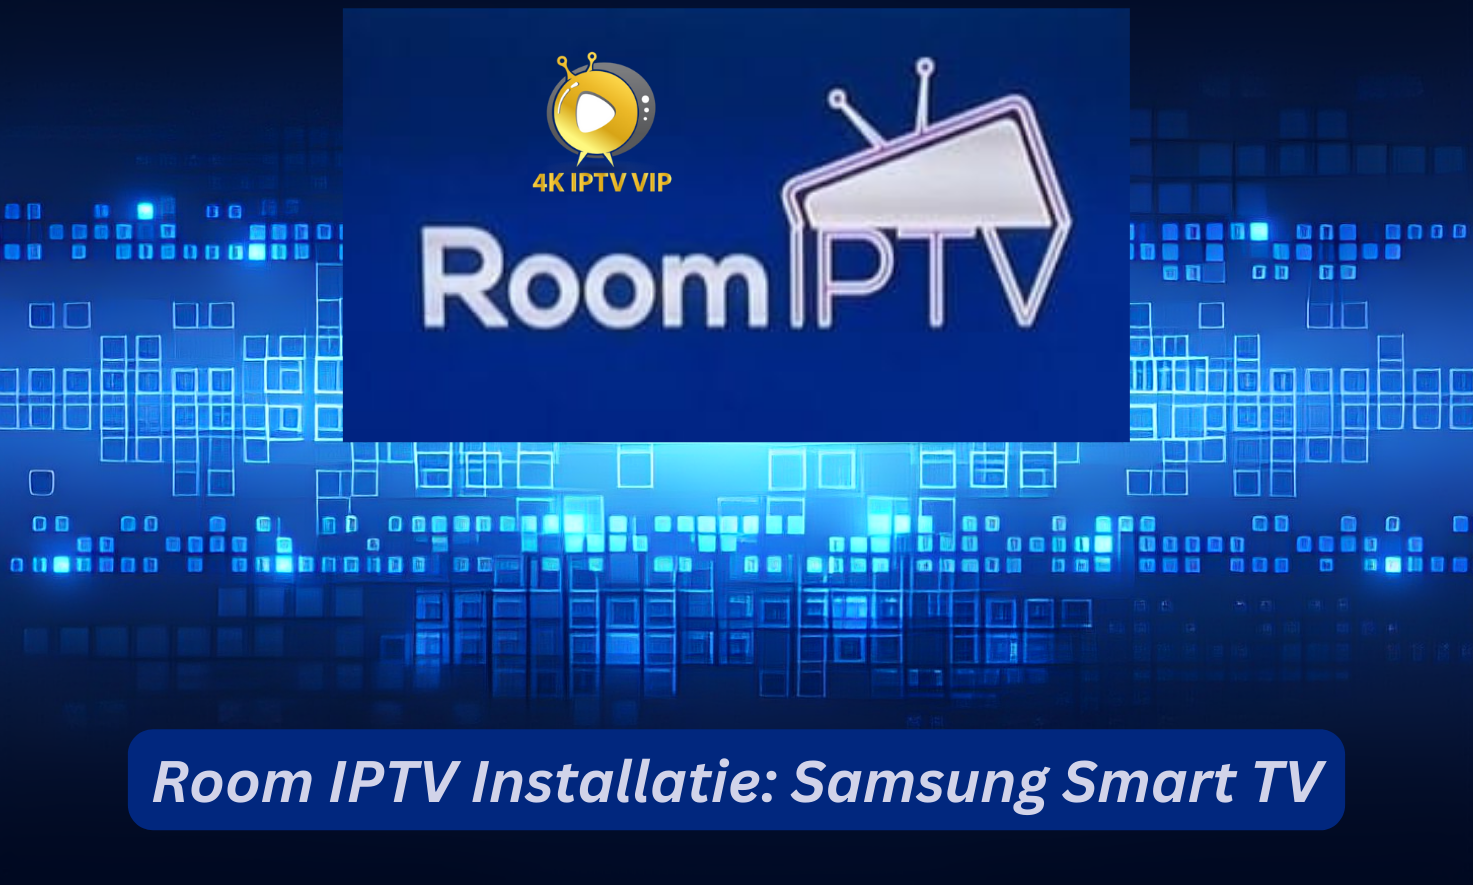 Room IPTV Installatie Samsung Smart TV